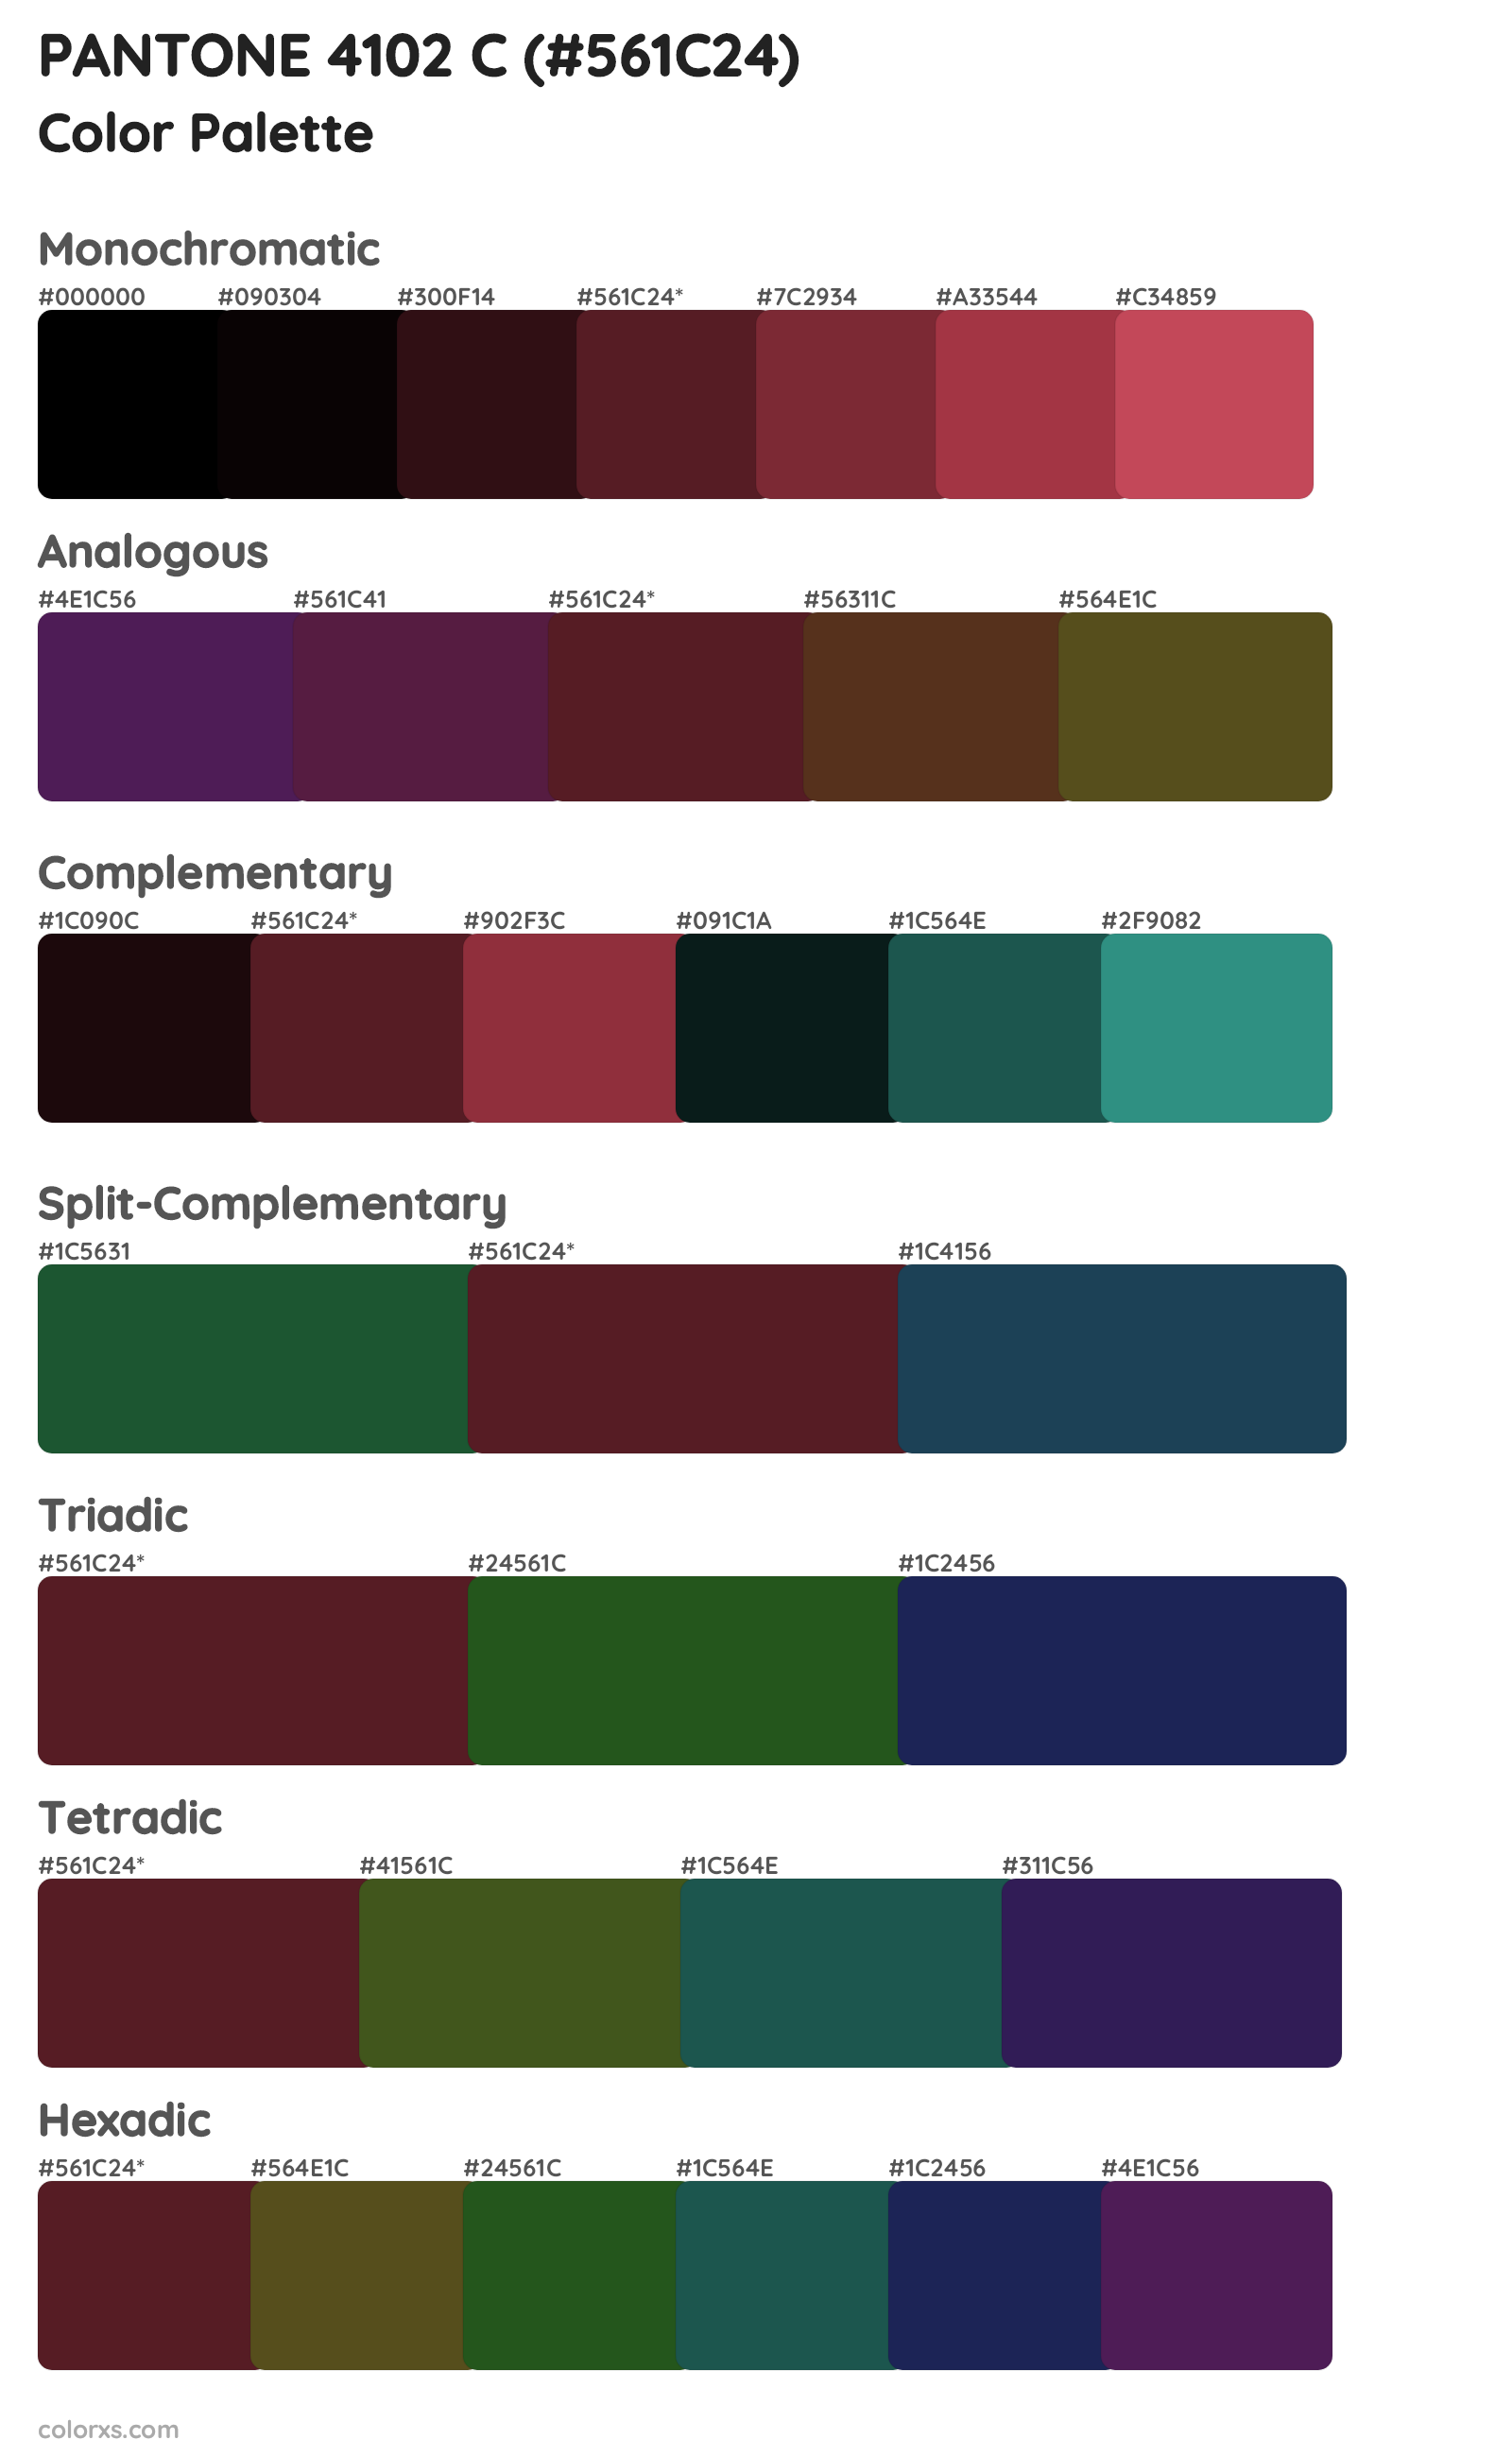 PANTONE 4102 C Color Scheme Palettes